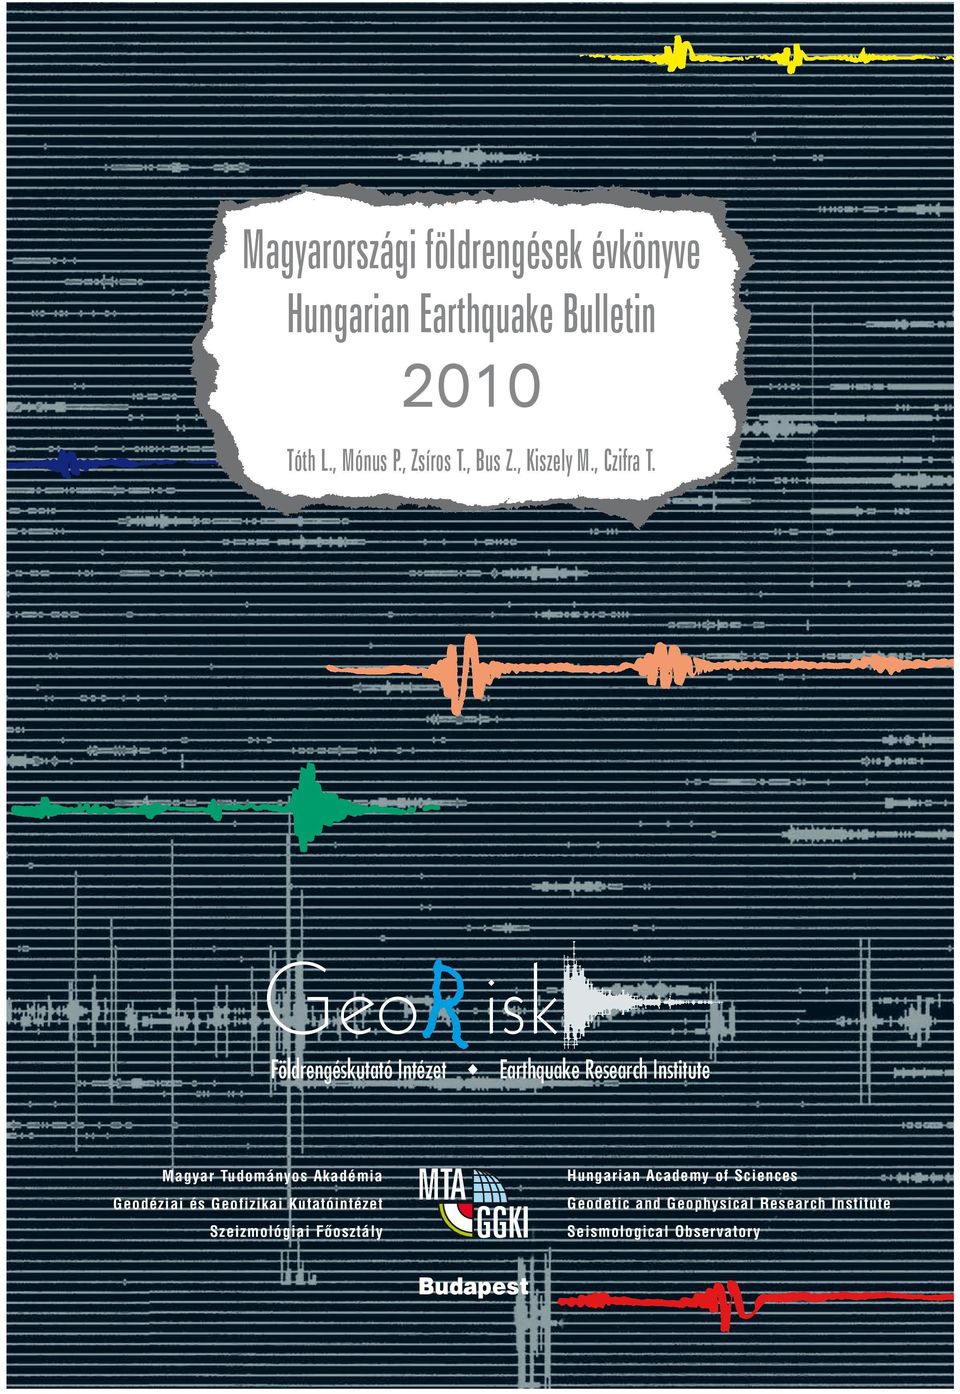 SUMMARY MAP OF BUDAPEST Magyarországi földrengések évkönyve Hungarian Earthquake Bulletin 21 Tóth L., Mónus P., Zsíros T., Bus Z., Kiszely M., Czifra T.